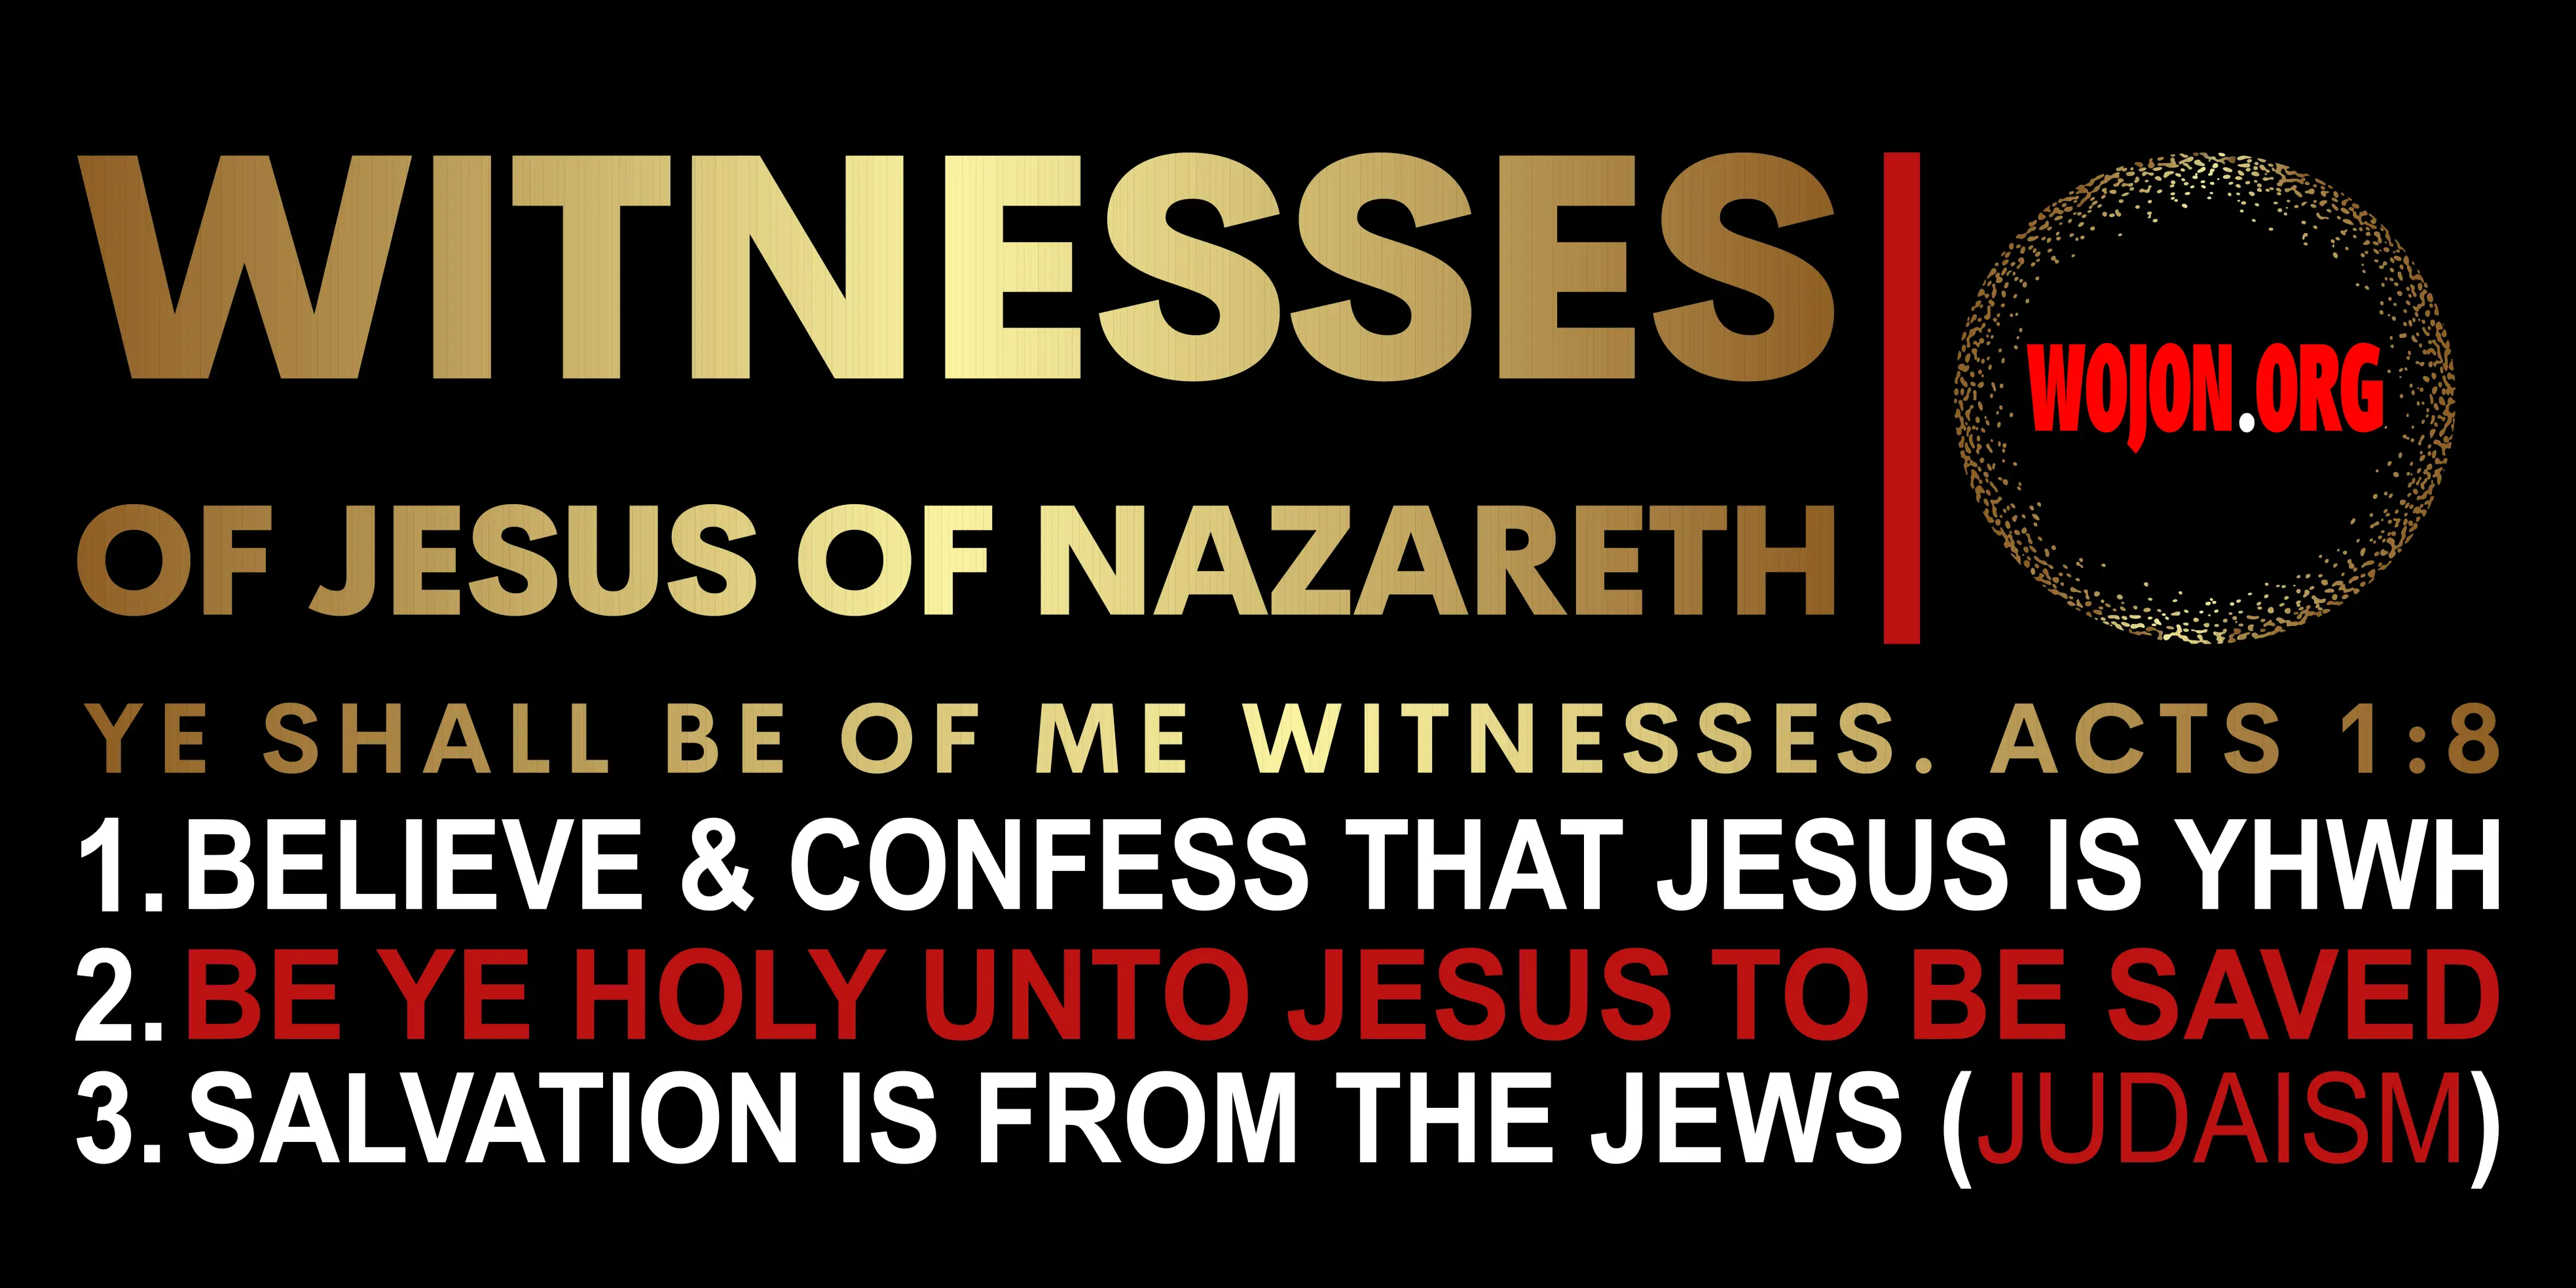 Beliefs of the witnesses of Jesus the Nazarene